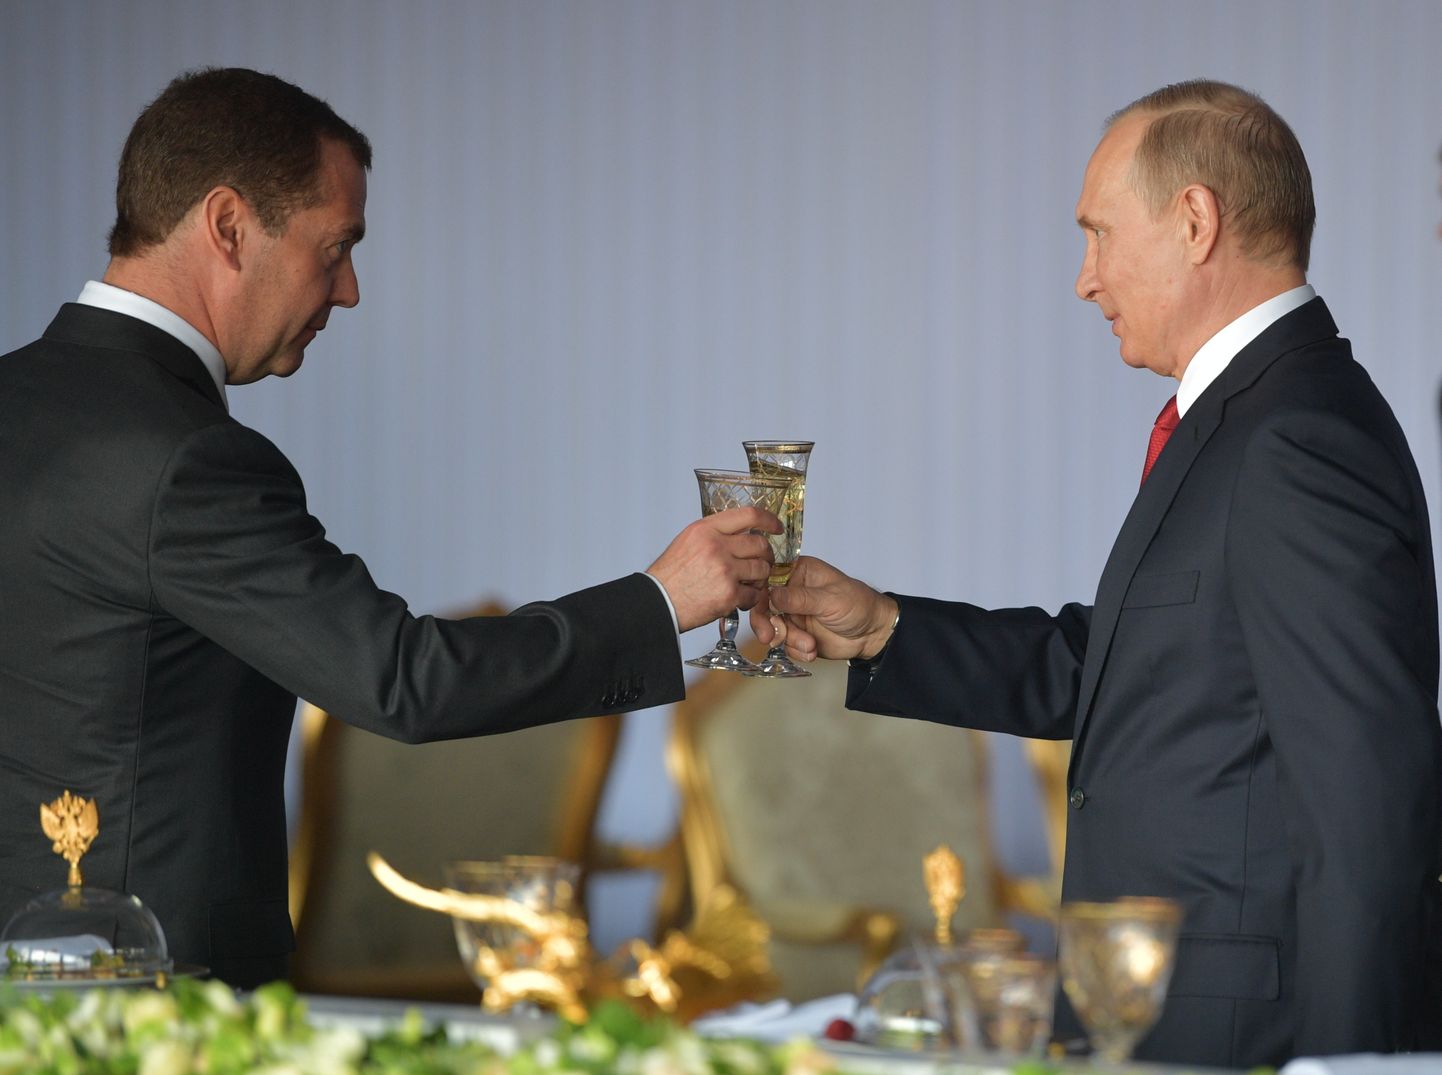 Третий президент России Дмитрий Медведев, который по данным СМИ имеет проблемы с алкоголизмом, выпивает со вторым (он же четвертый и "пожизненный") президентом РФ Путиным, Москва, 2017 год.